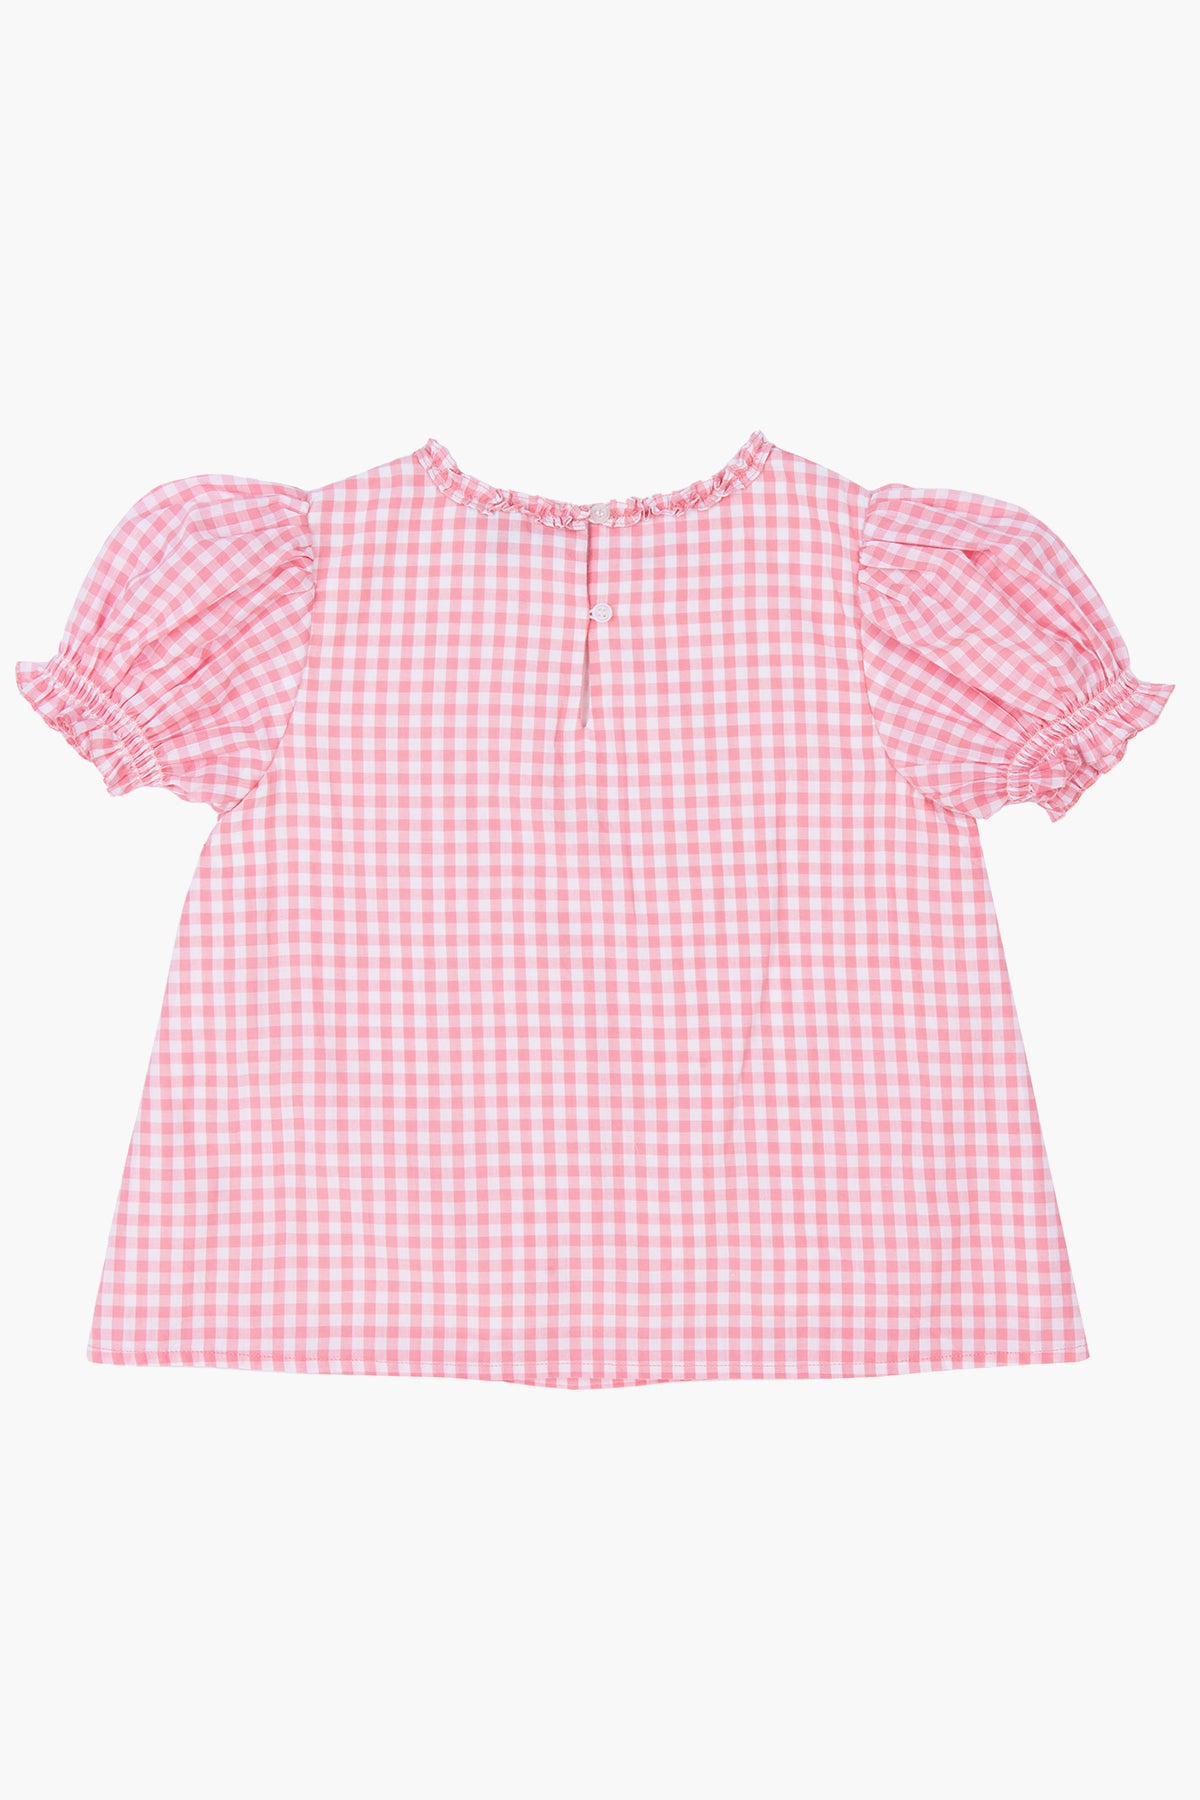 Velveteen Gracie Gingham Girls Shirt – Mini Ruby